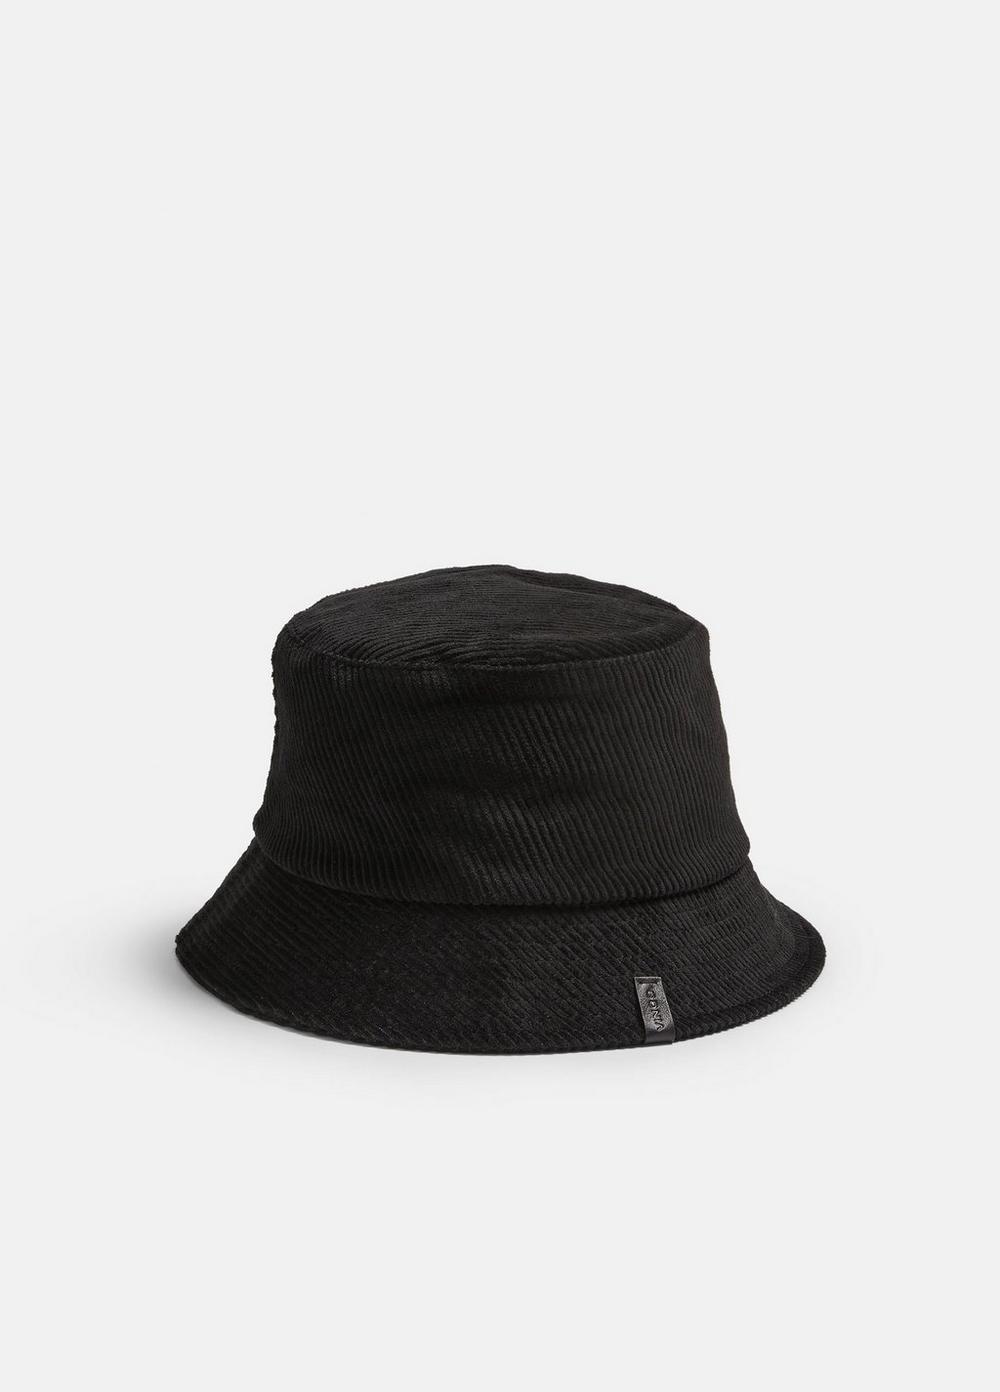 Corduroy Bucket Hat, Black, Size L/XL Vince